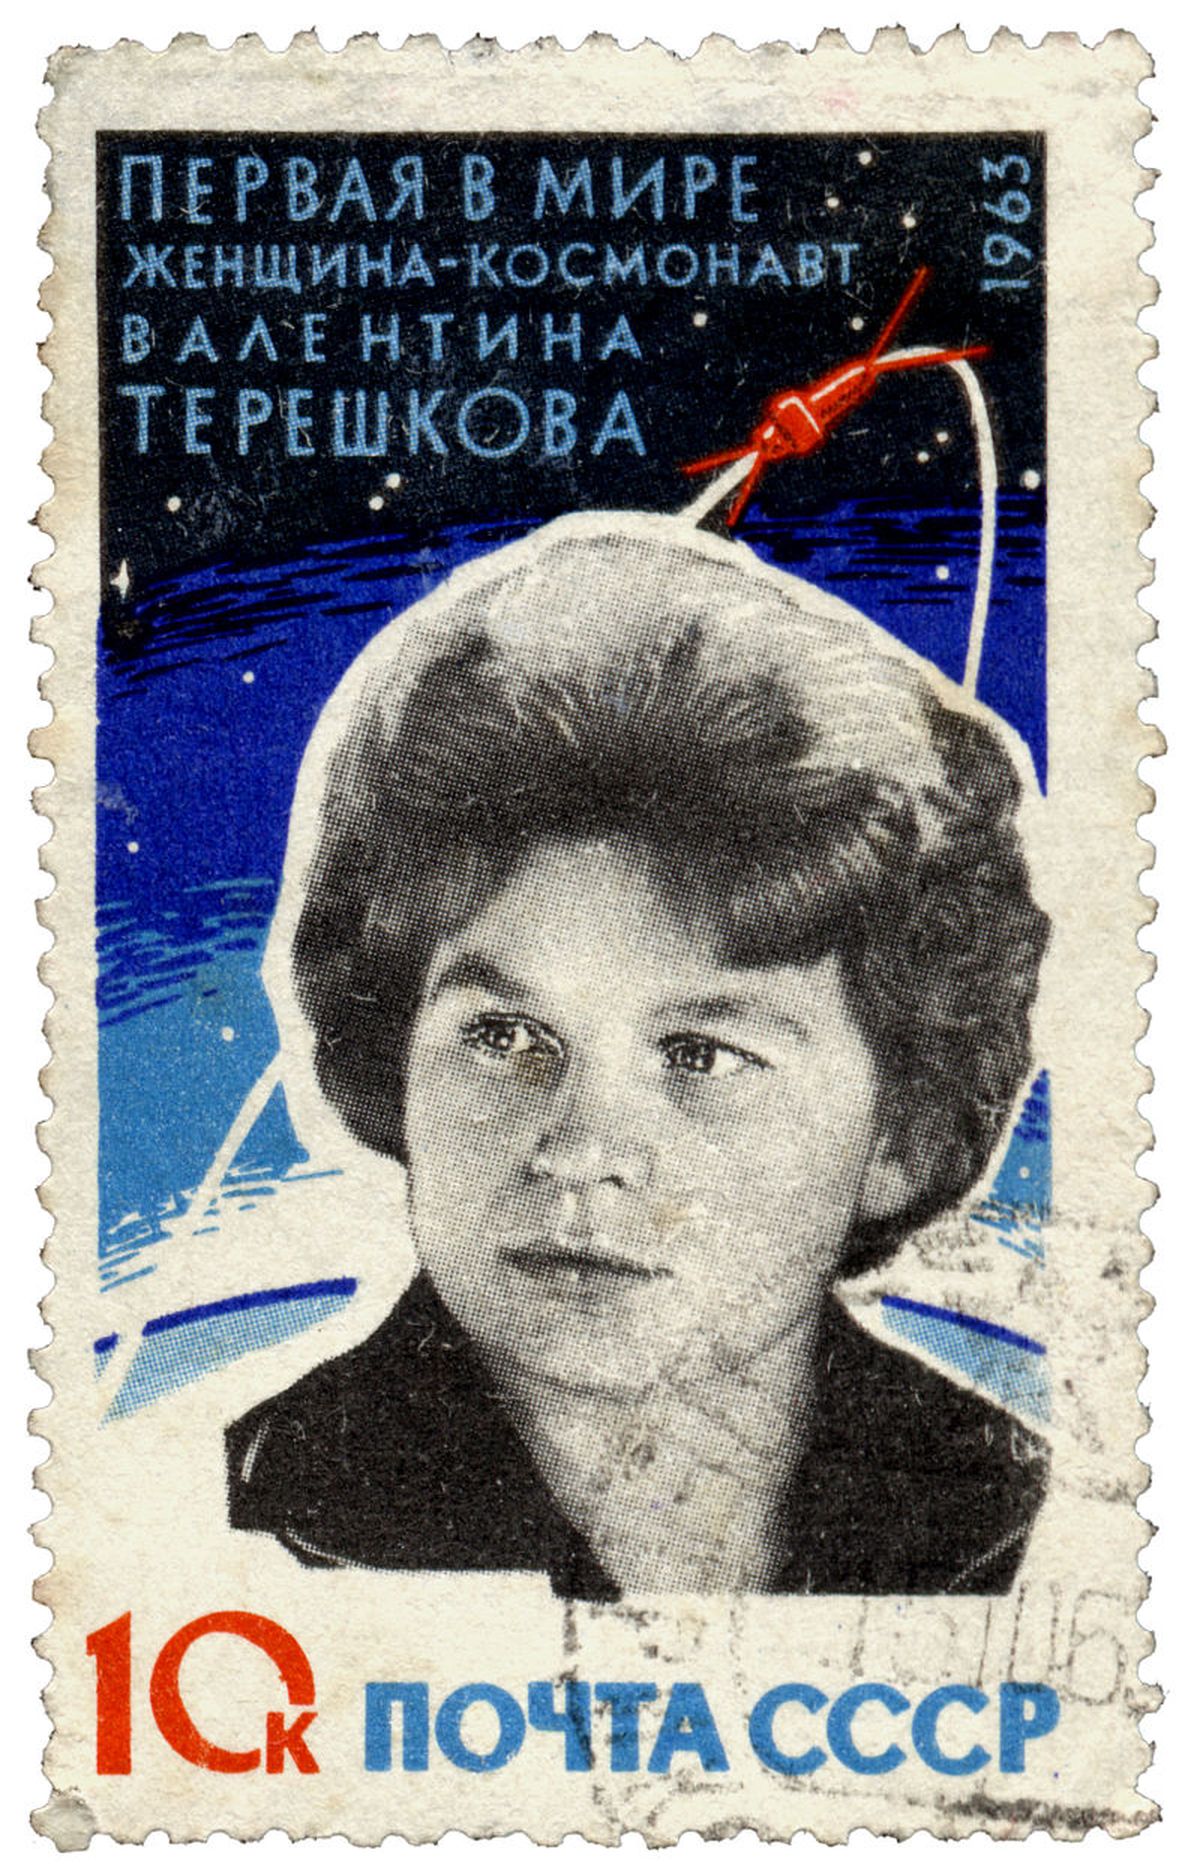 Valentīna Tereškova uz pastmarkas